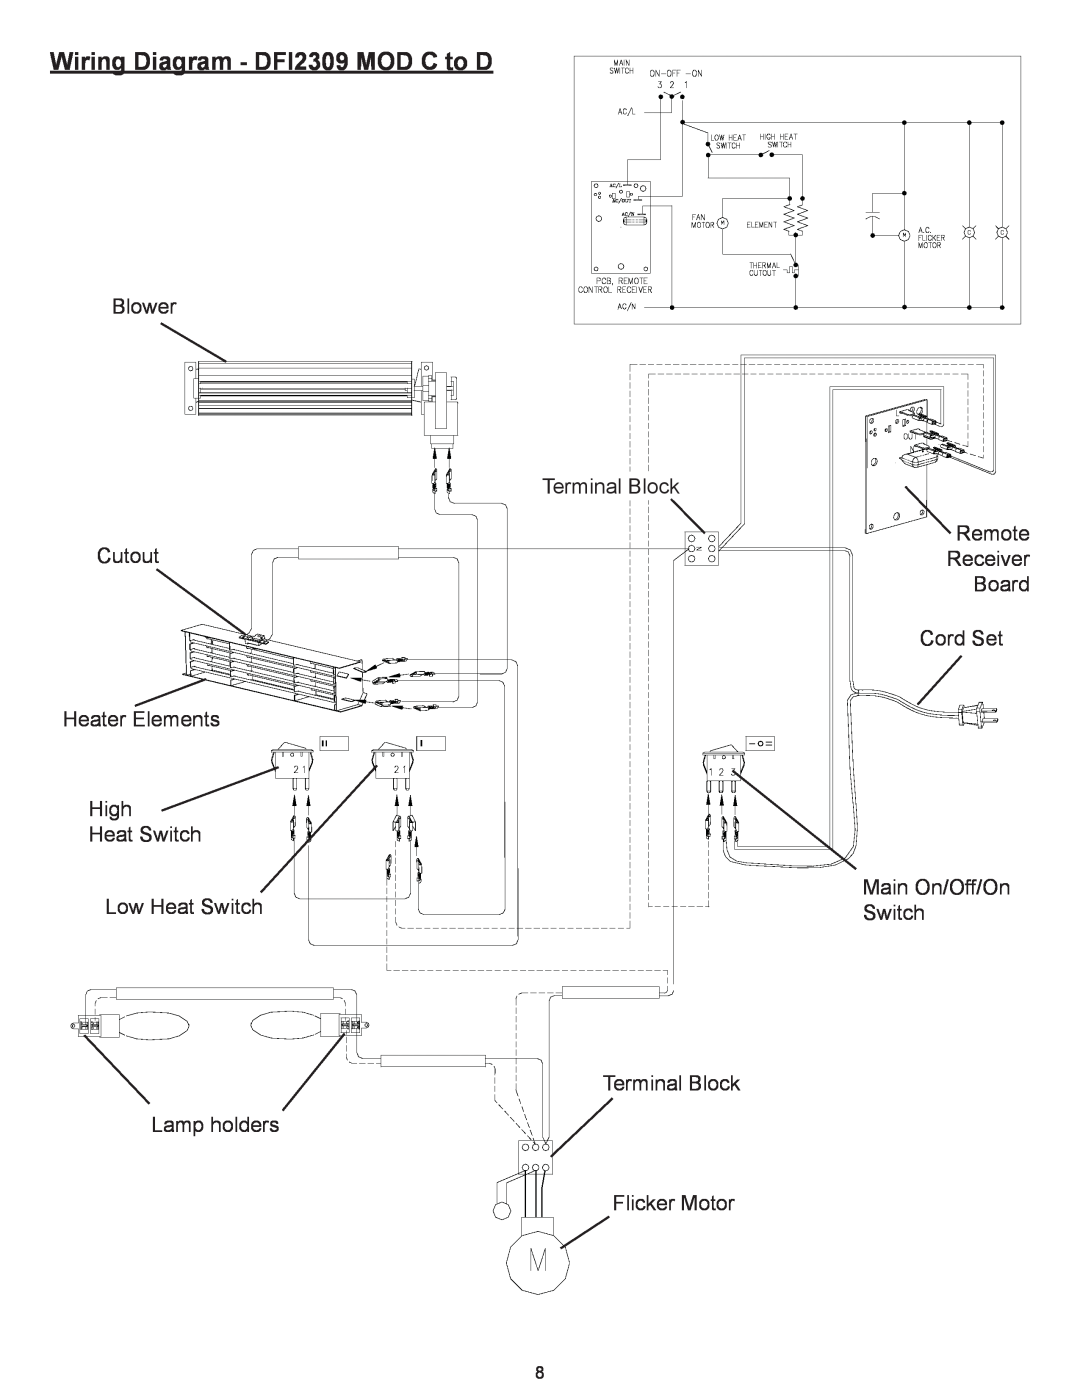 Dimplex Dimplex DFI2309 Wiring Diagram - DFI2309 MOD C to D, Blower Cutout Heater Elements, High, Heat Switch 